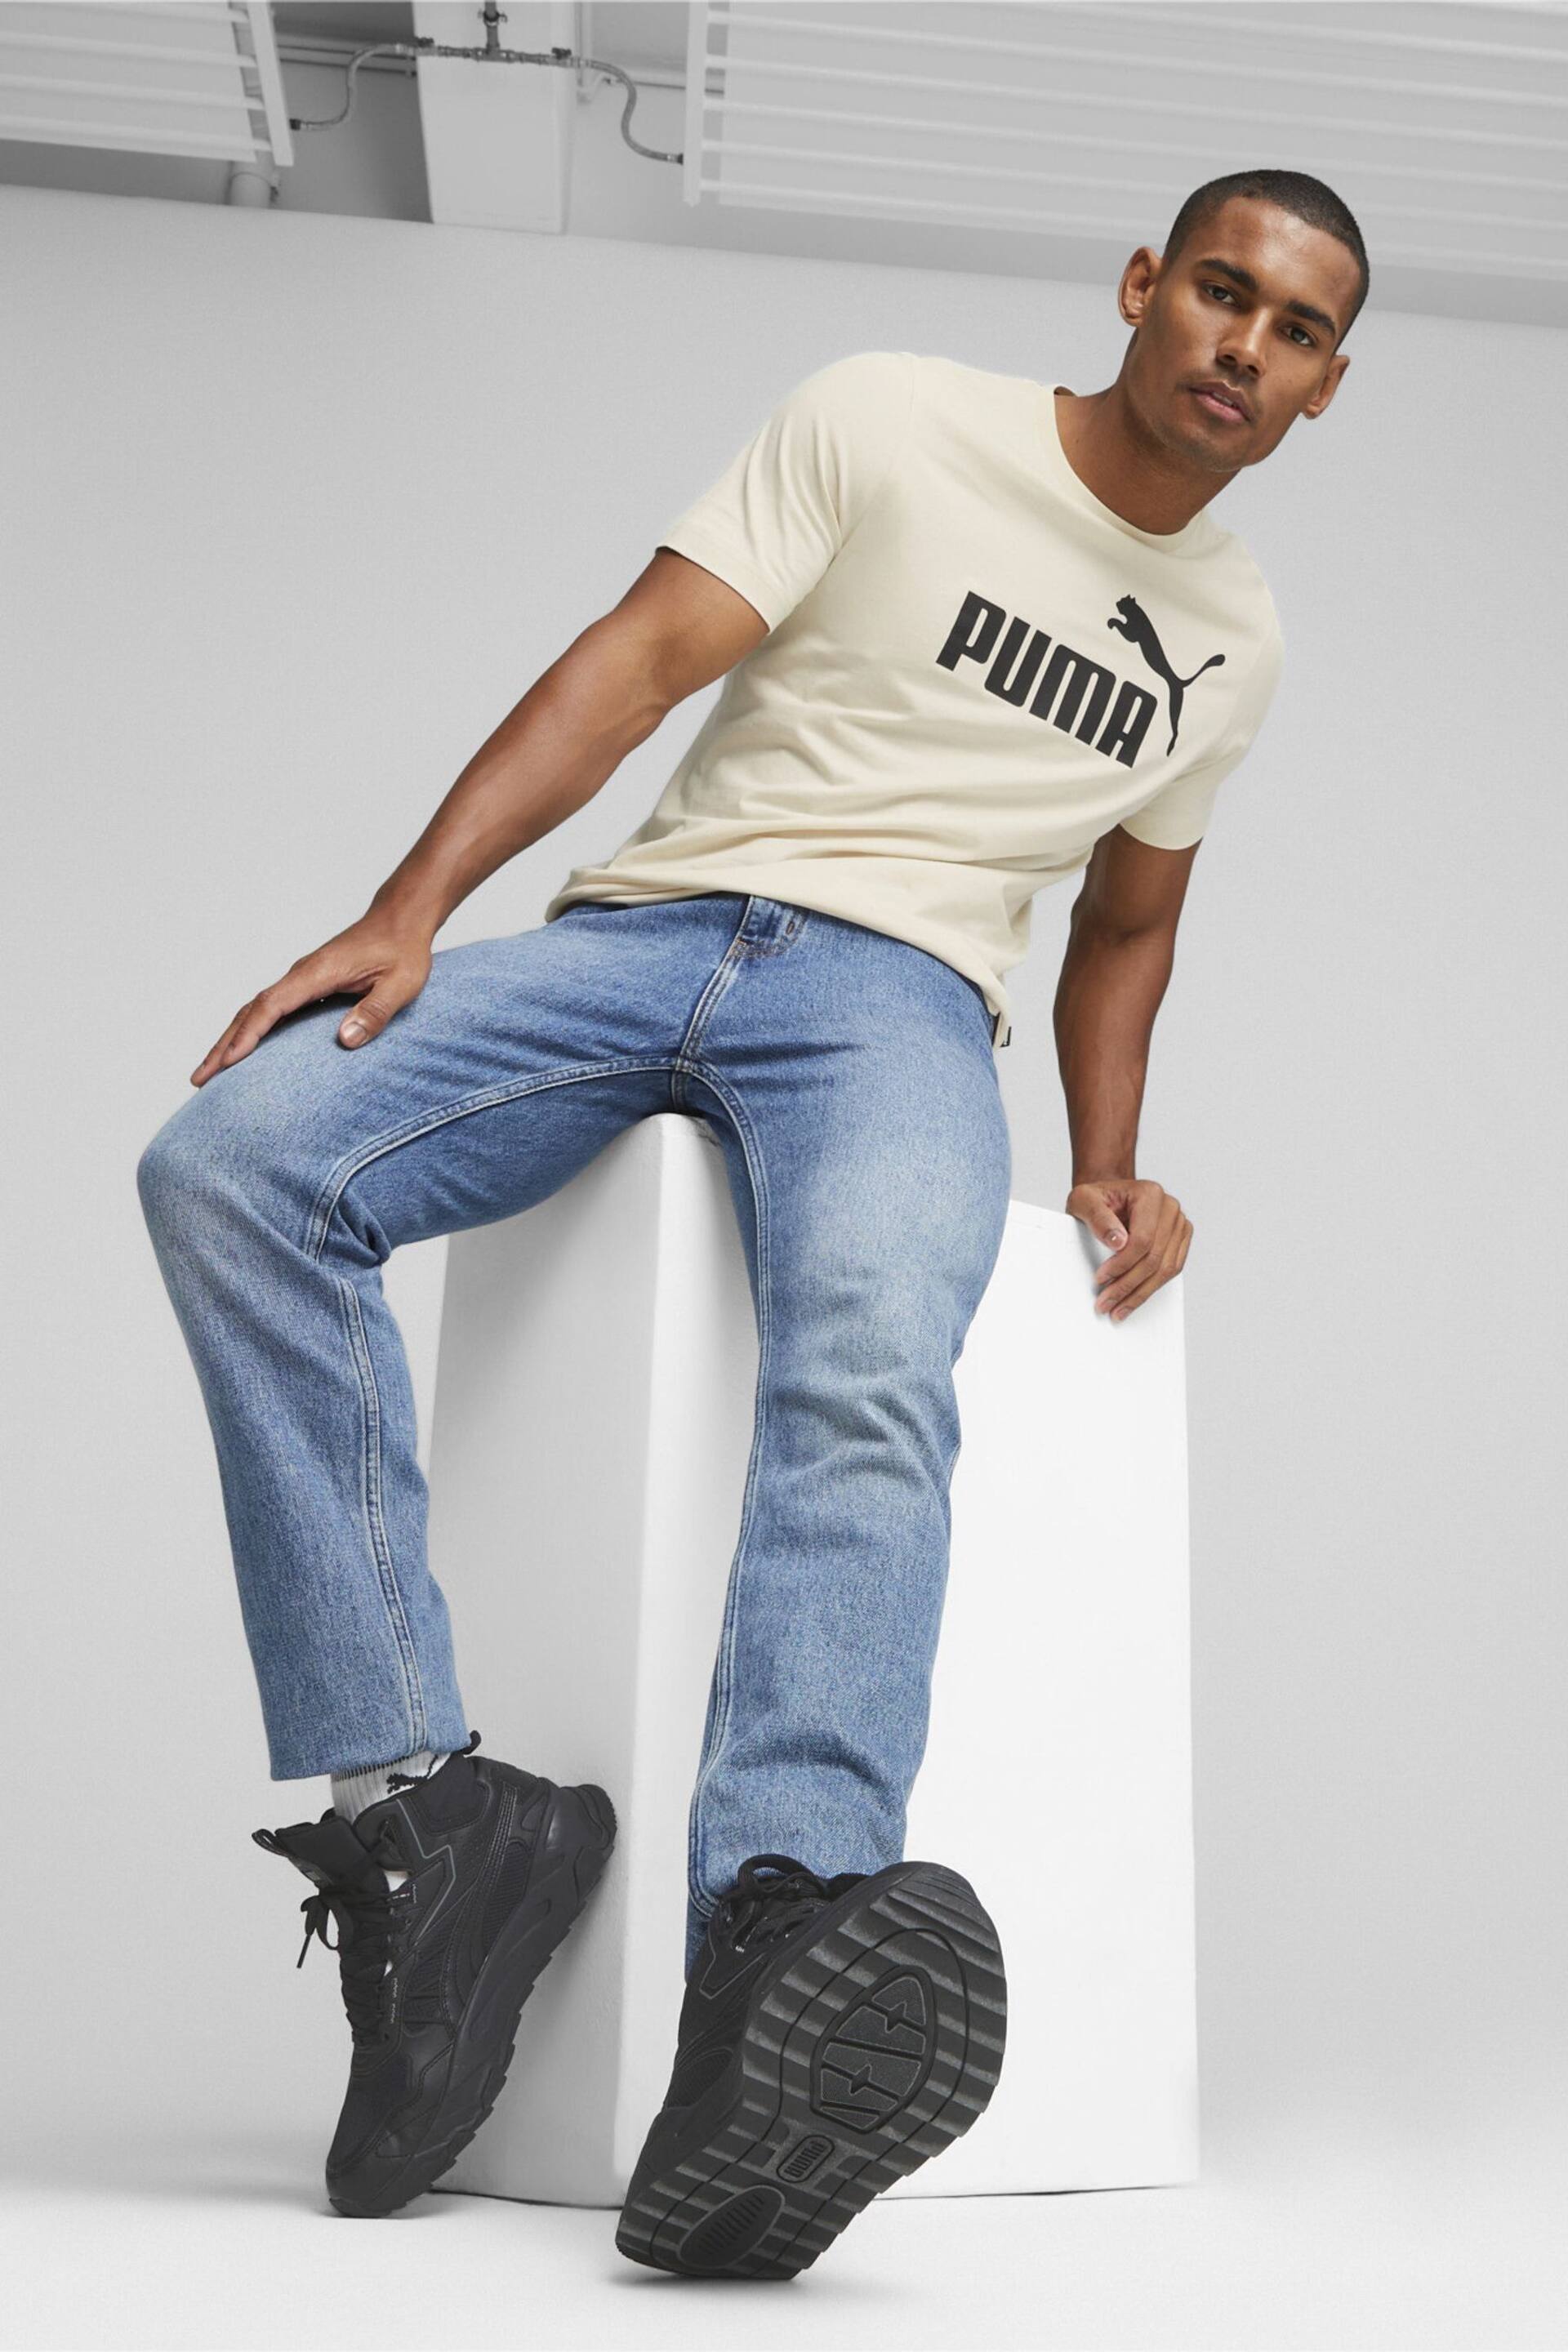 Puma White Essentials Logo Men's T-Shirt - Image 3 of 5